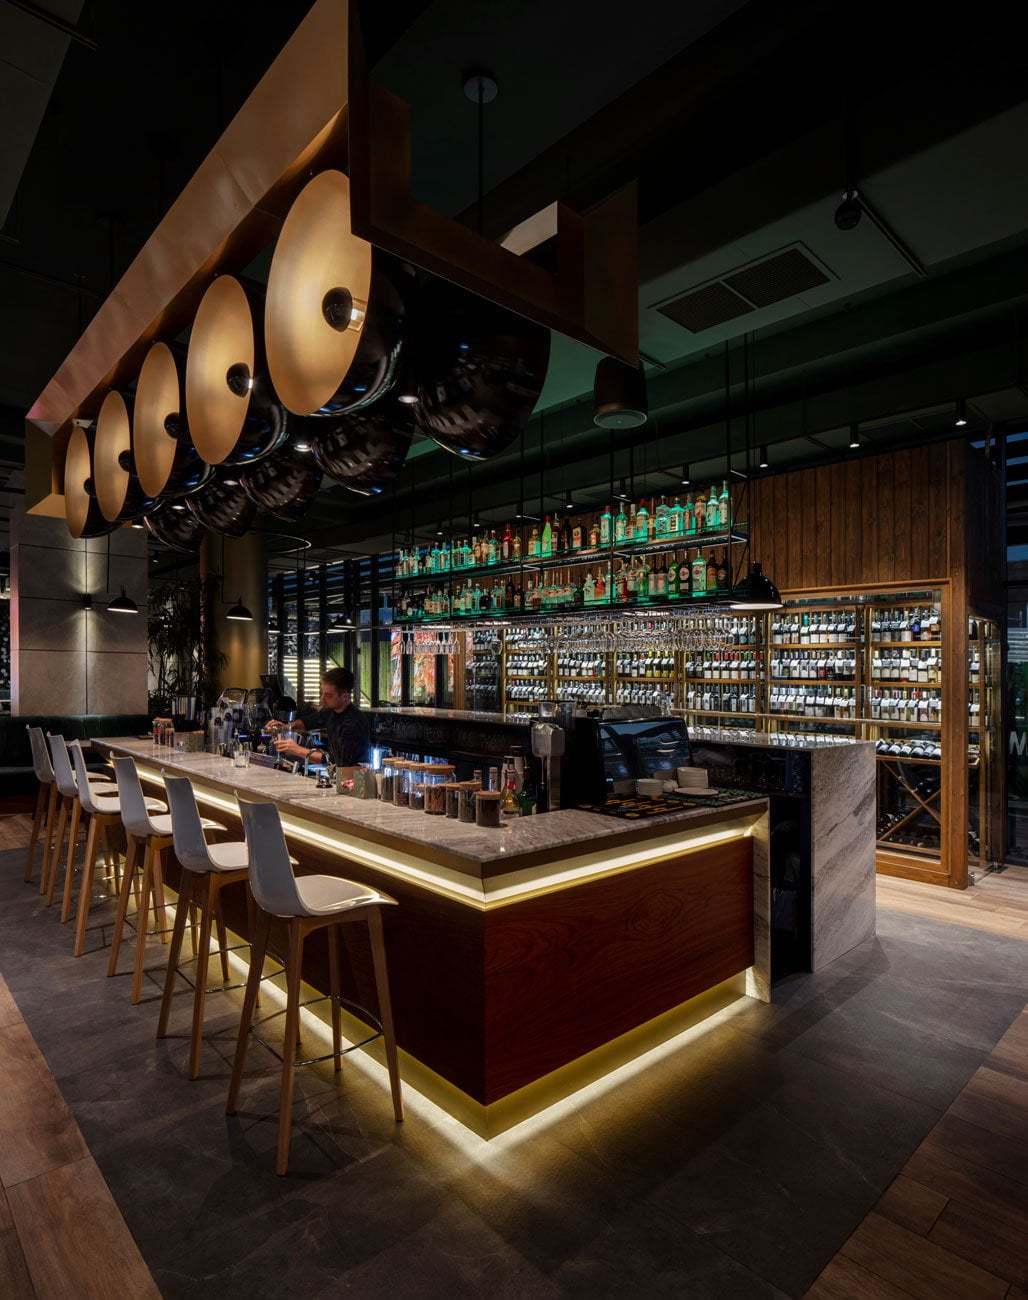 фотография барной зоны в фуд парке Даунтаун с баром и барной стойкой с подсветкой